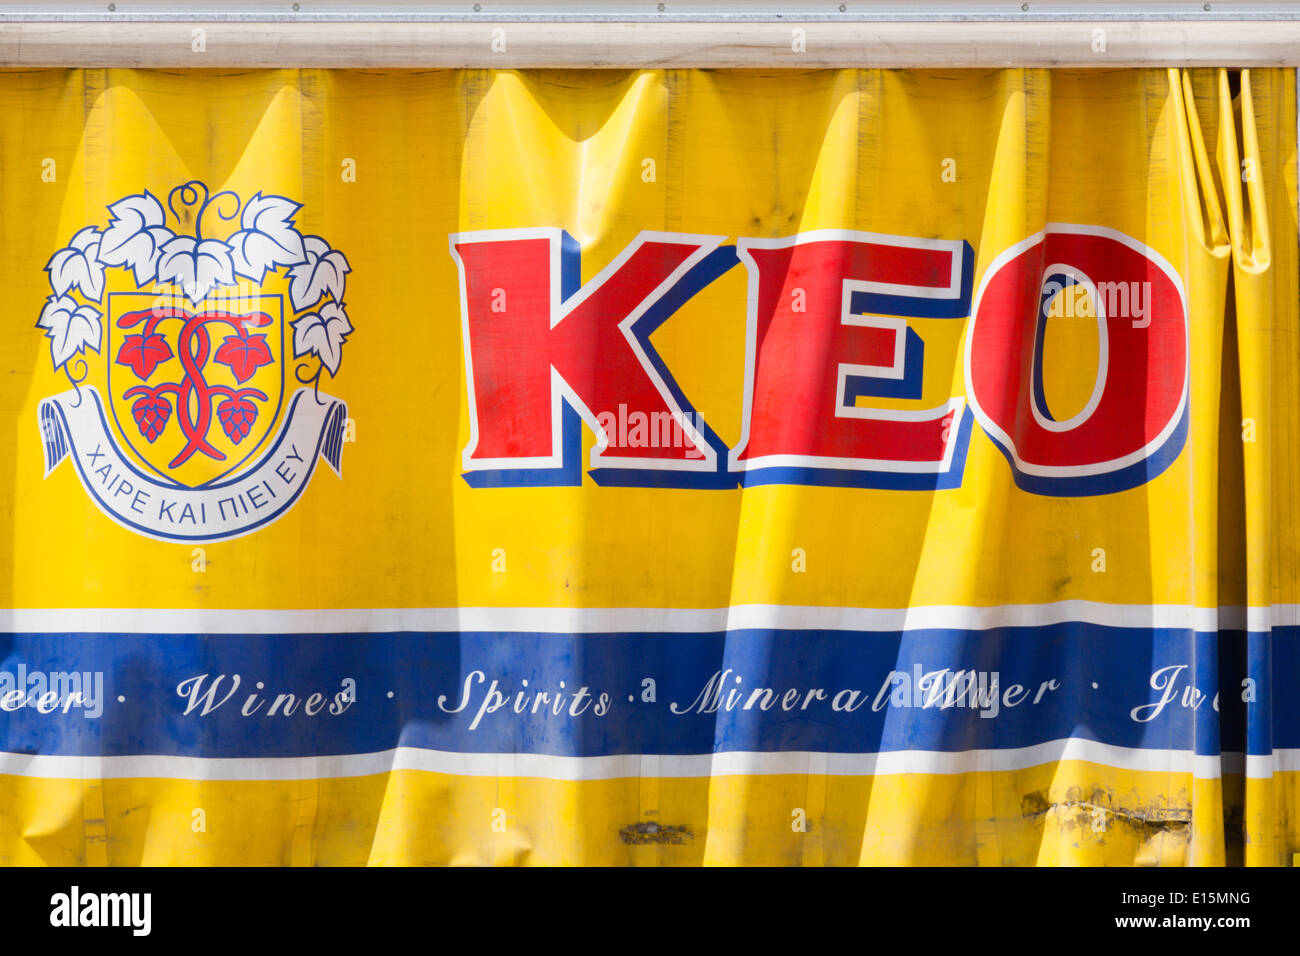 'Rideau' Keo bière côté camion de livraison. Banque D'Images